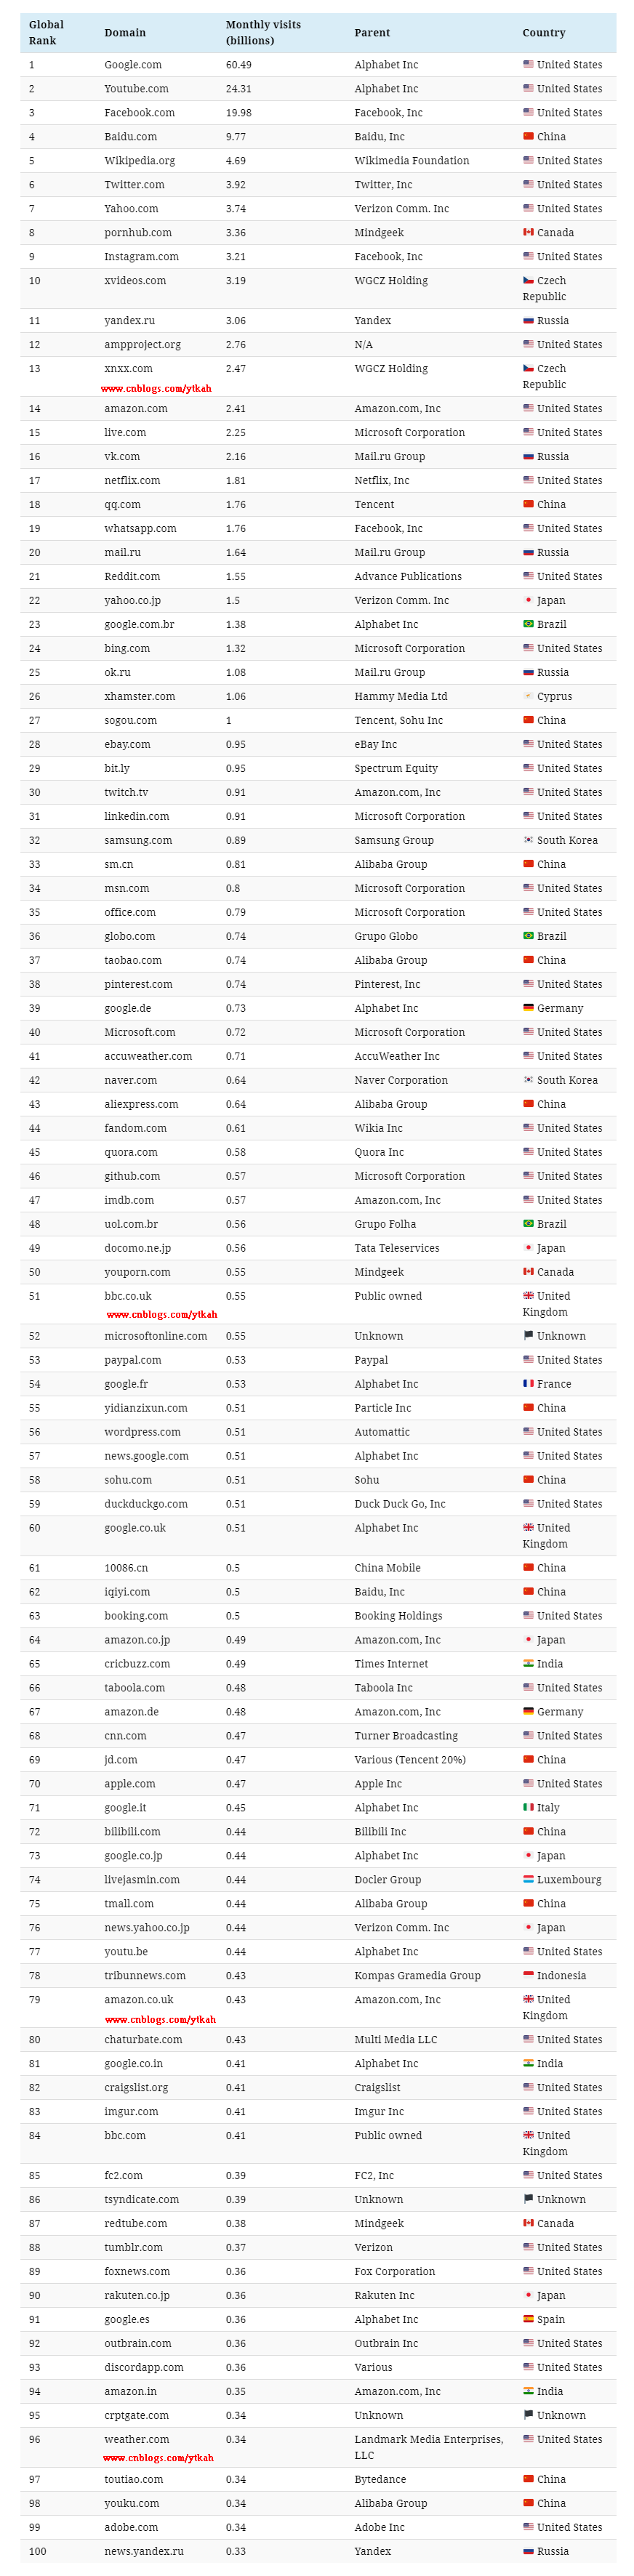 100 global website rankings list in June